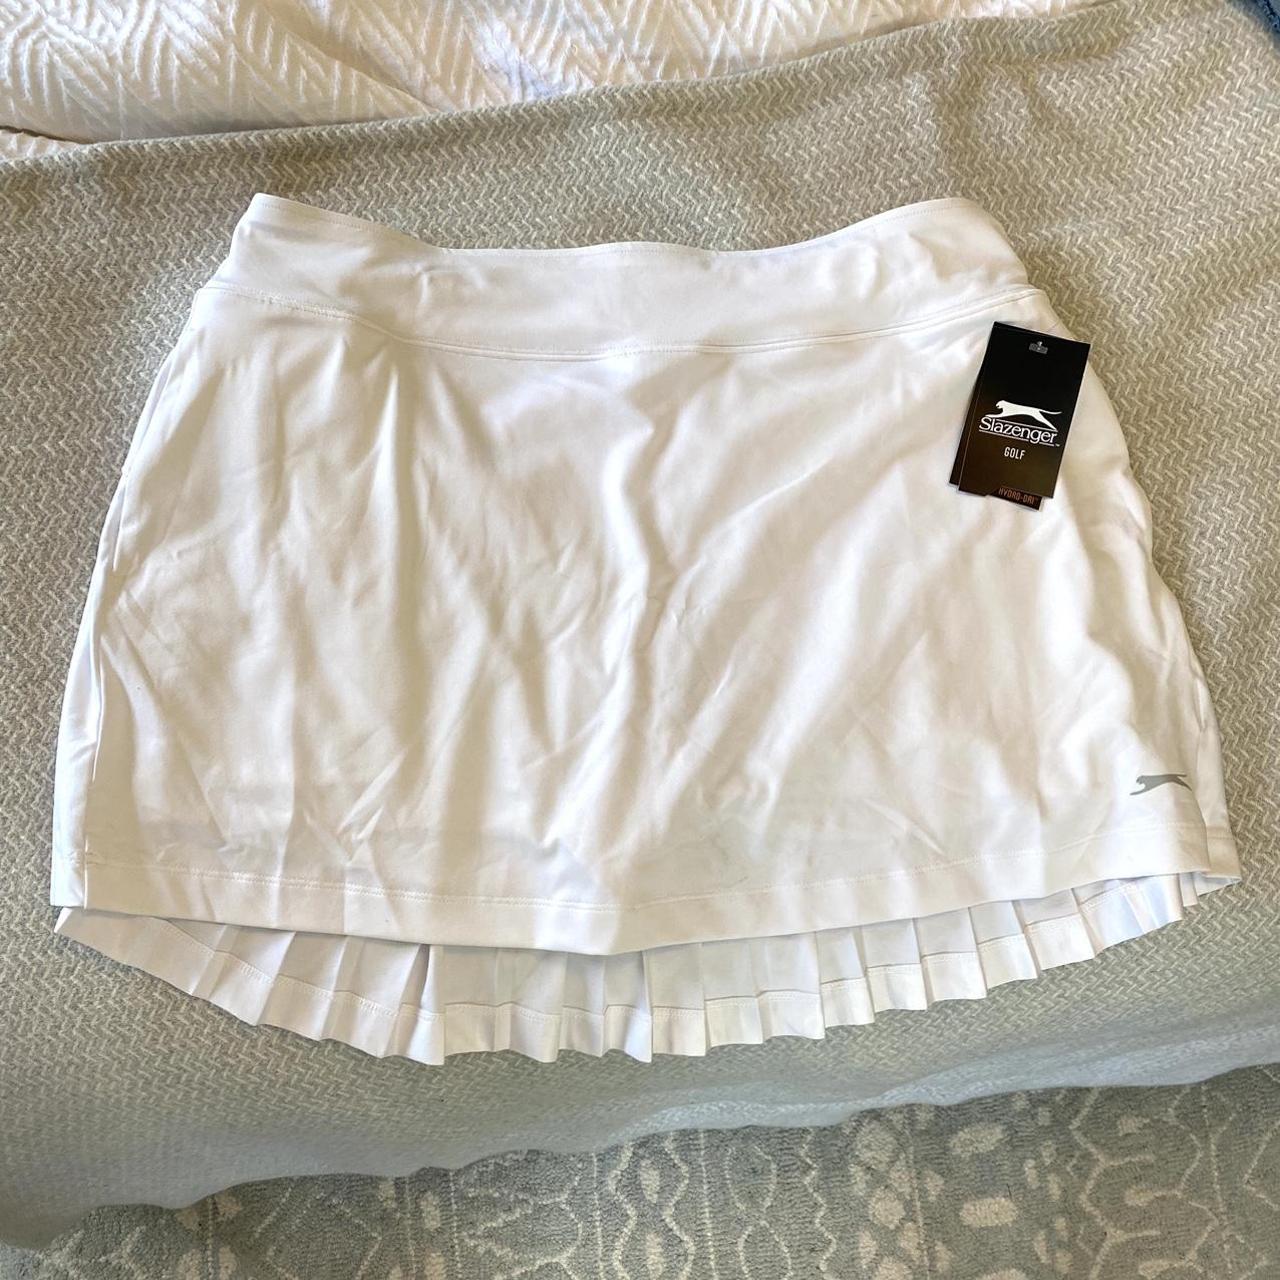 Slazenger Women's White Skirt